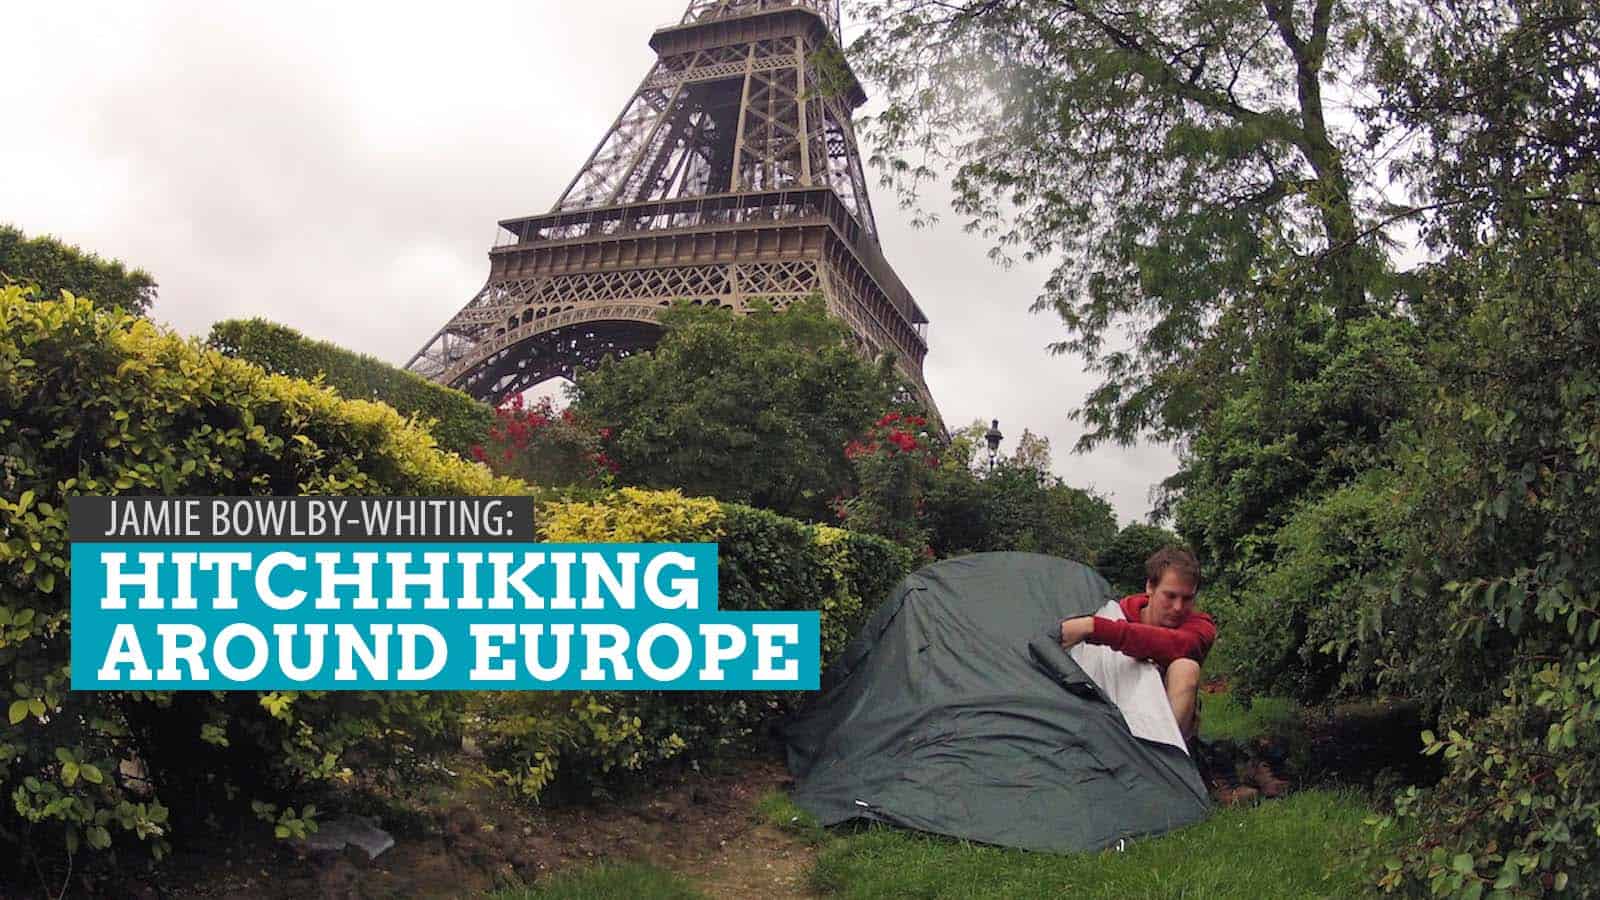 Get Inspired: Jamie Bowlby-Whiting, Hitchhiking Around Europe